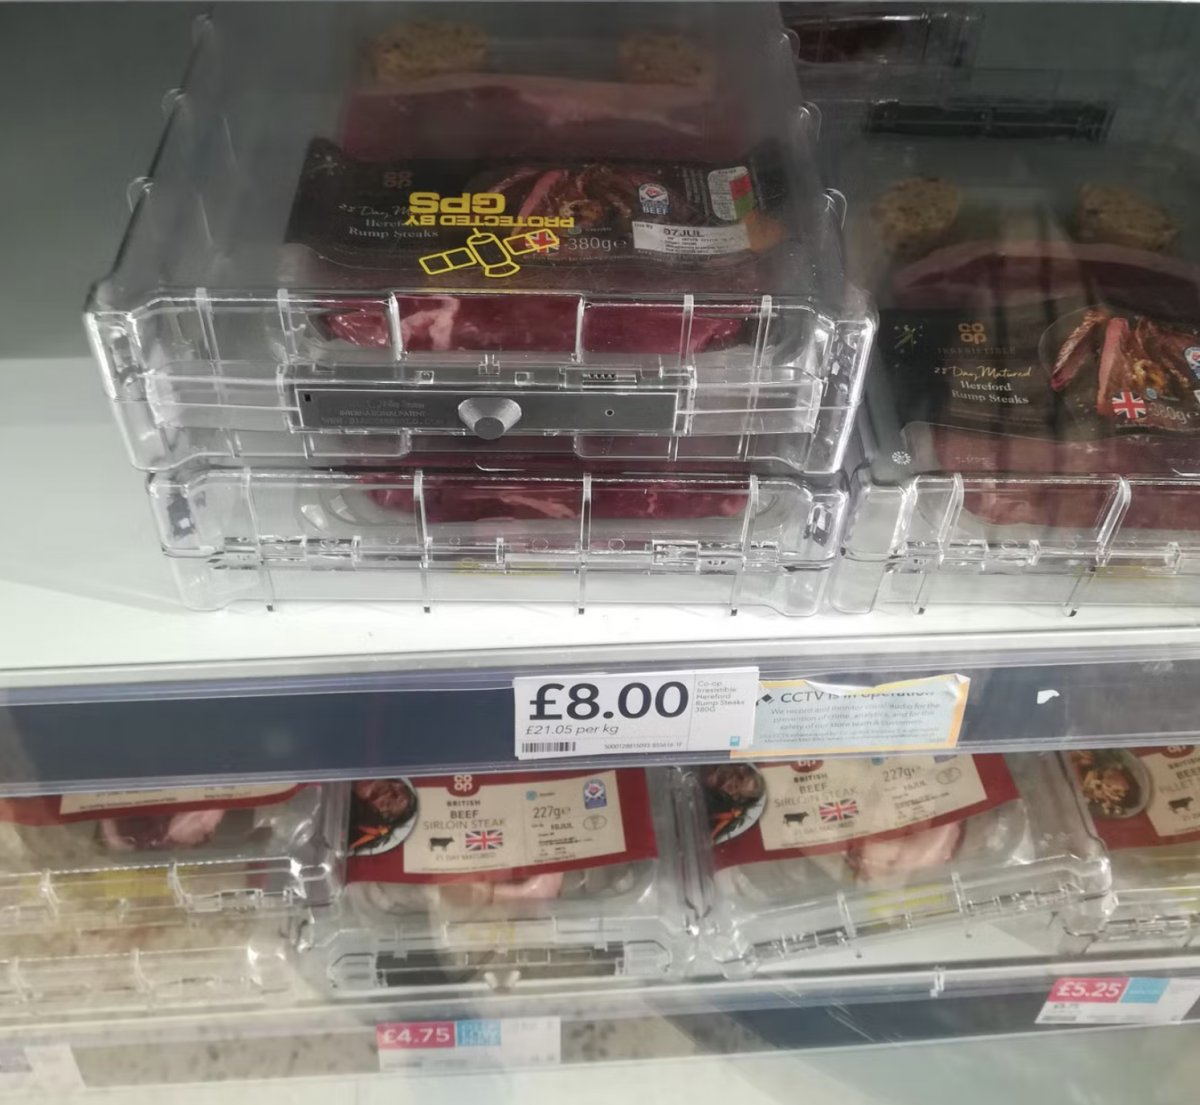 İngiltere de marketlerde bazı gıdalara elektronik kilit takıldı #3